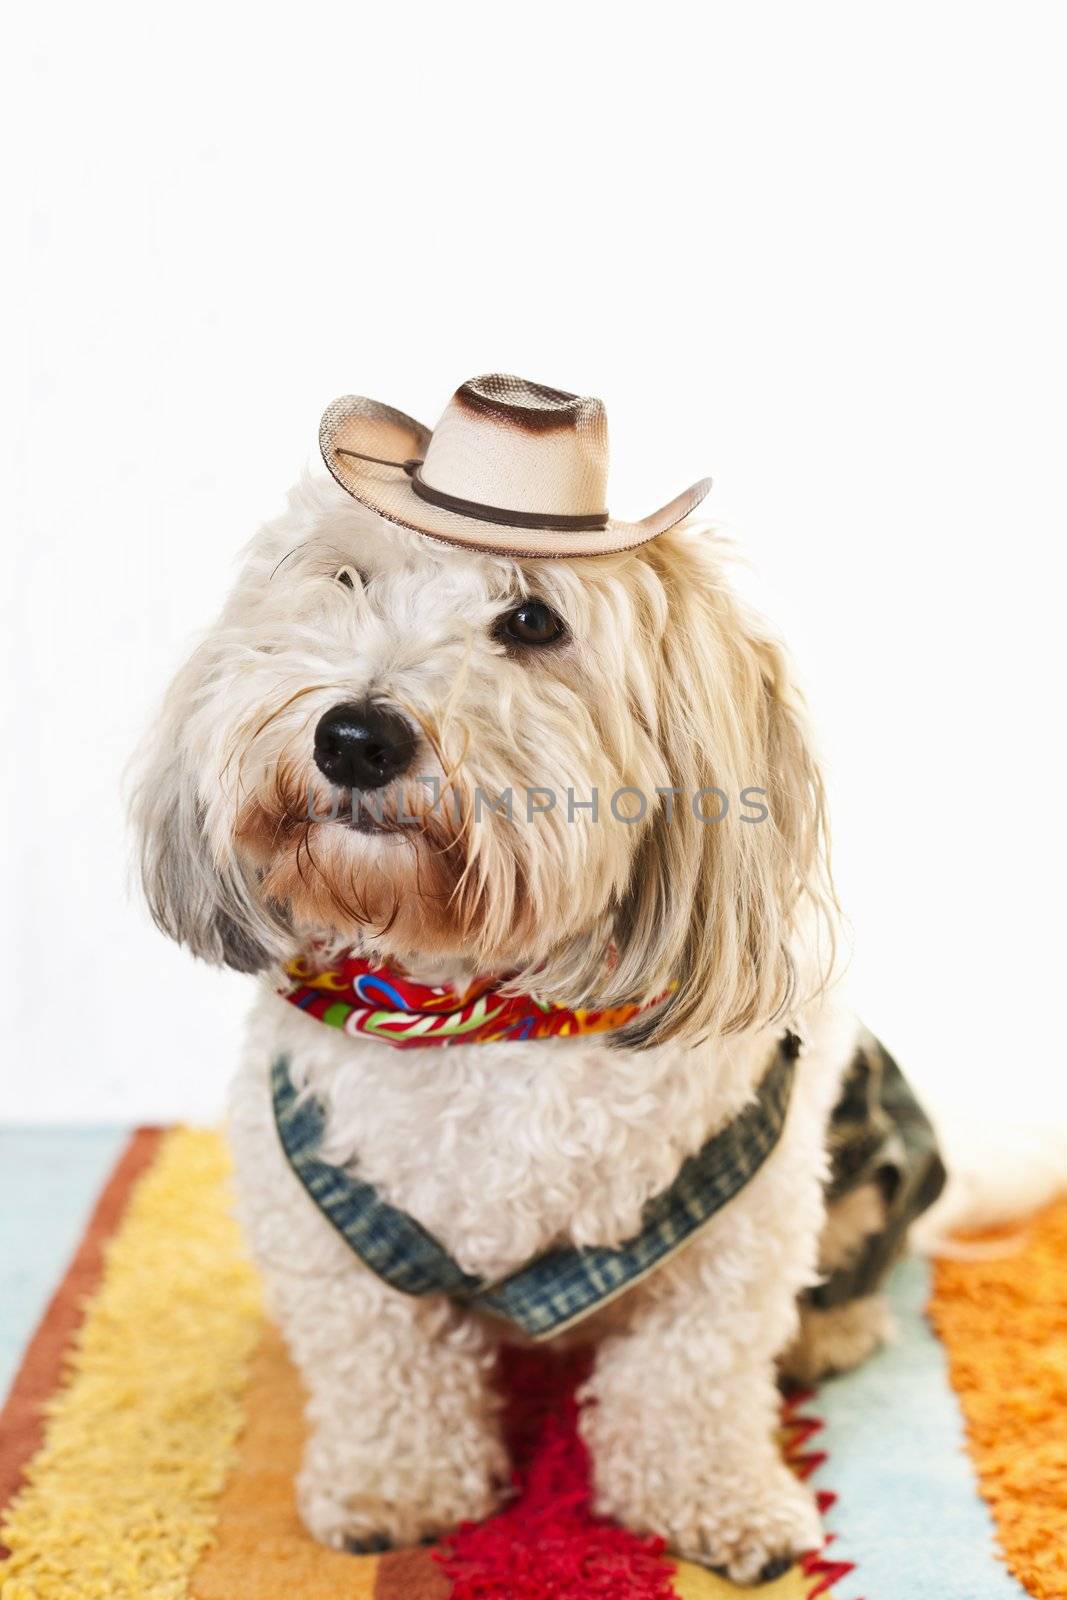 Adorable coton de tulear dog in cowboy hat and kerchief